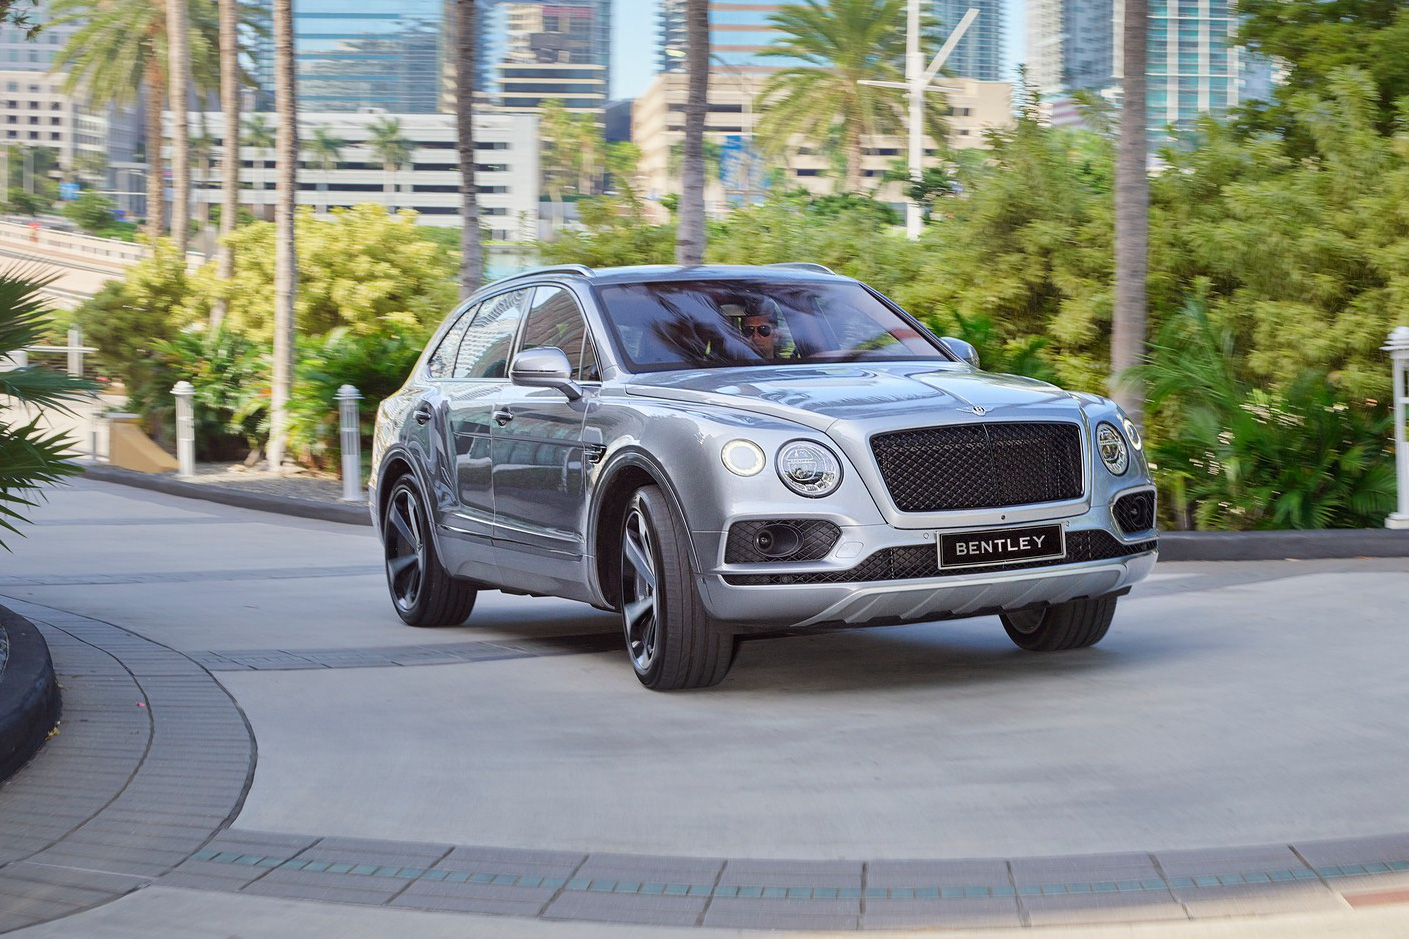 Bentley khai tử Mulsanne vì doanh số thấp, chuyển hướng phát triển SUV mới